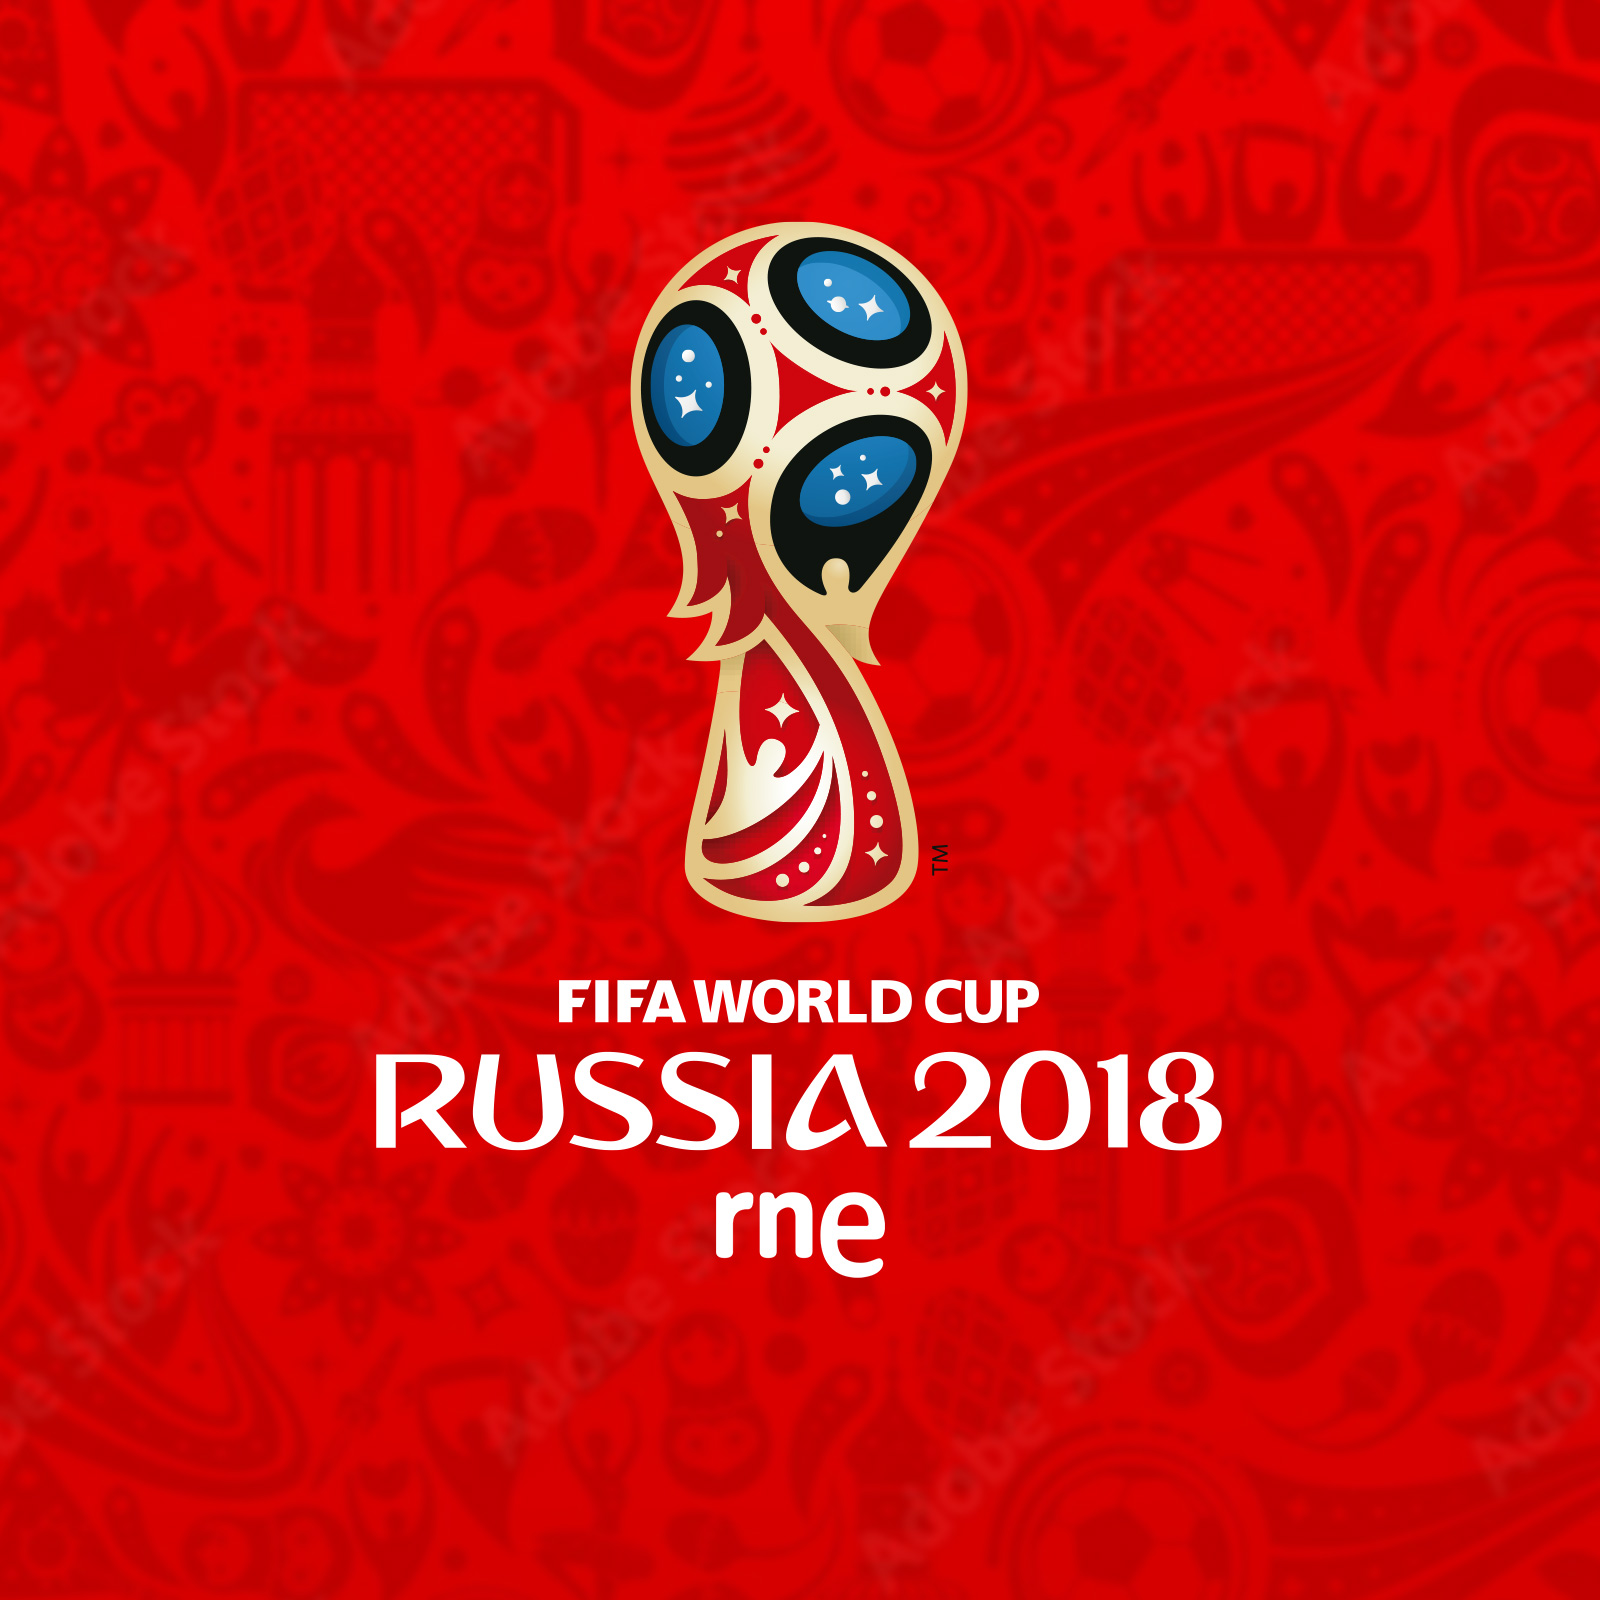 Especial de Rusia 2018 - Programa deportivo en RTVE